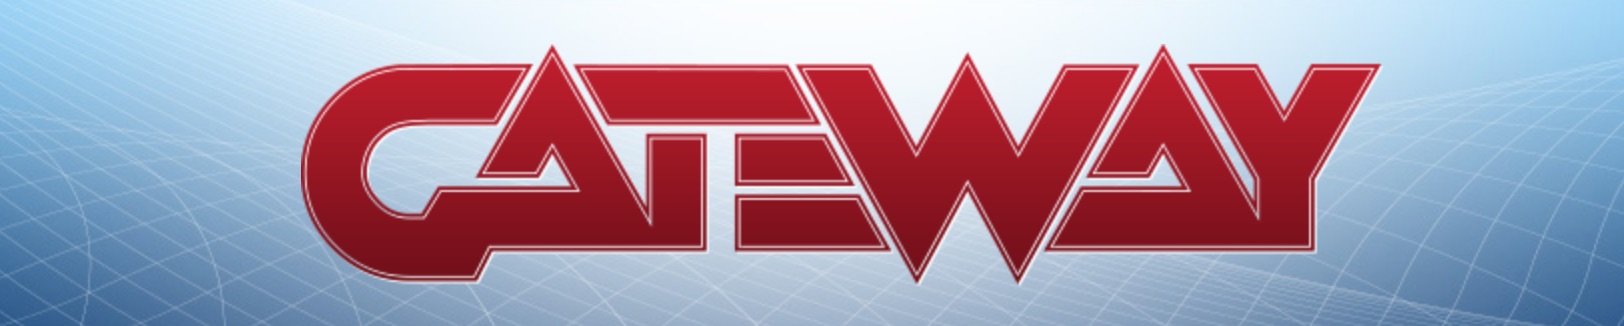 Gateway логотип